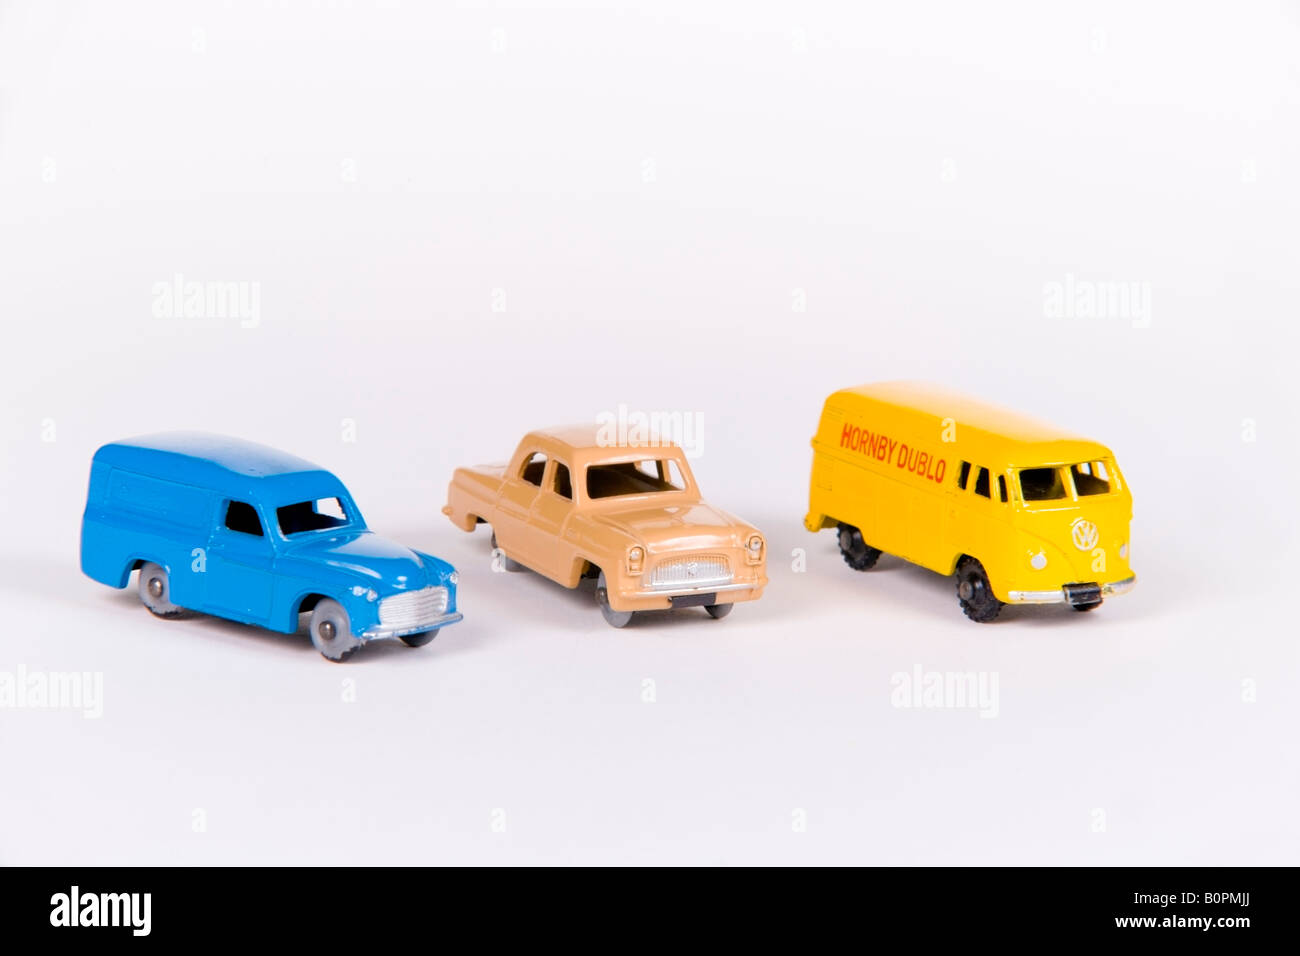 Gruppo di Hornby Dublo 1960 s automobili giocattolo Foto Stock